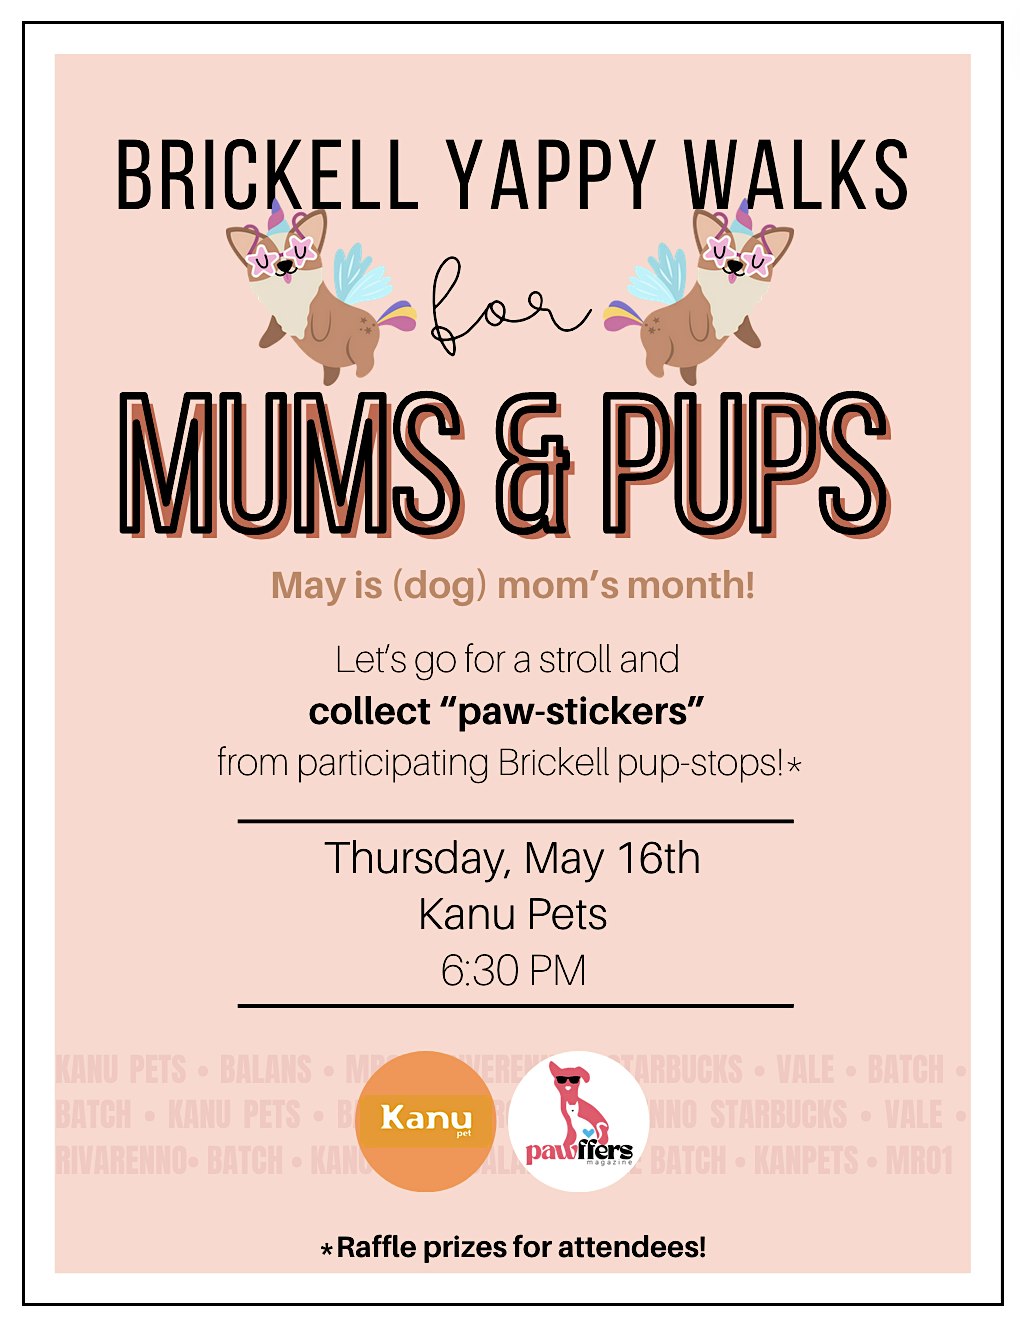 Brickell Yappy Walk - May